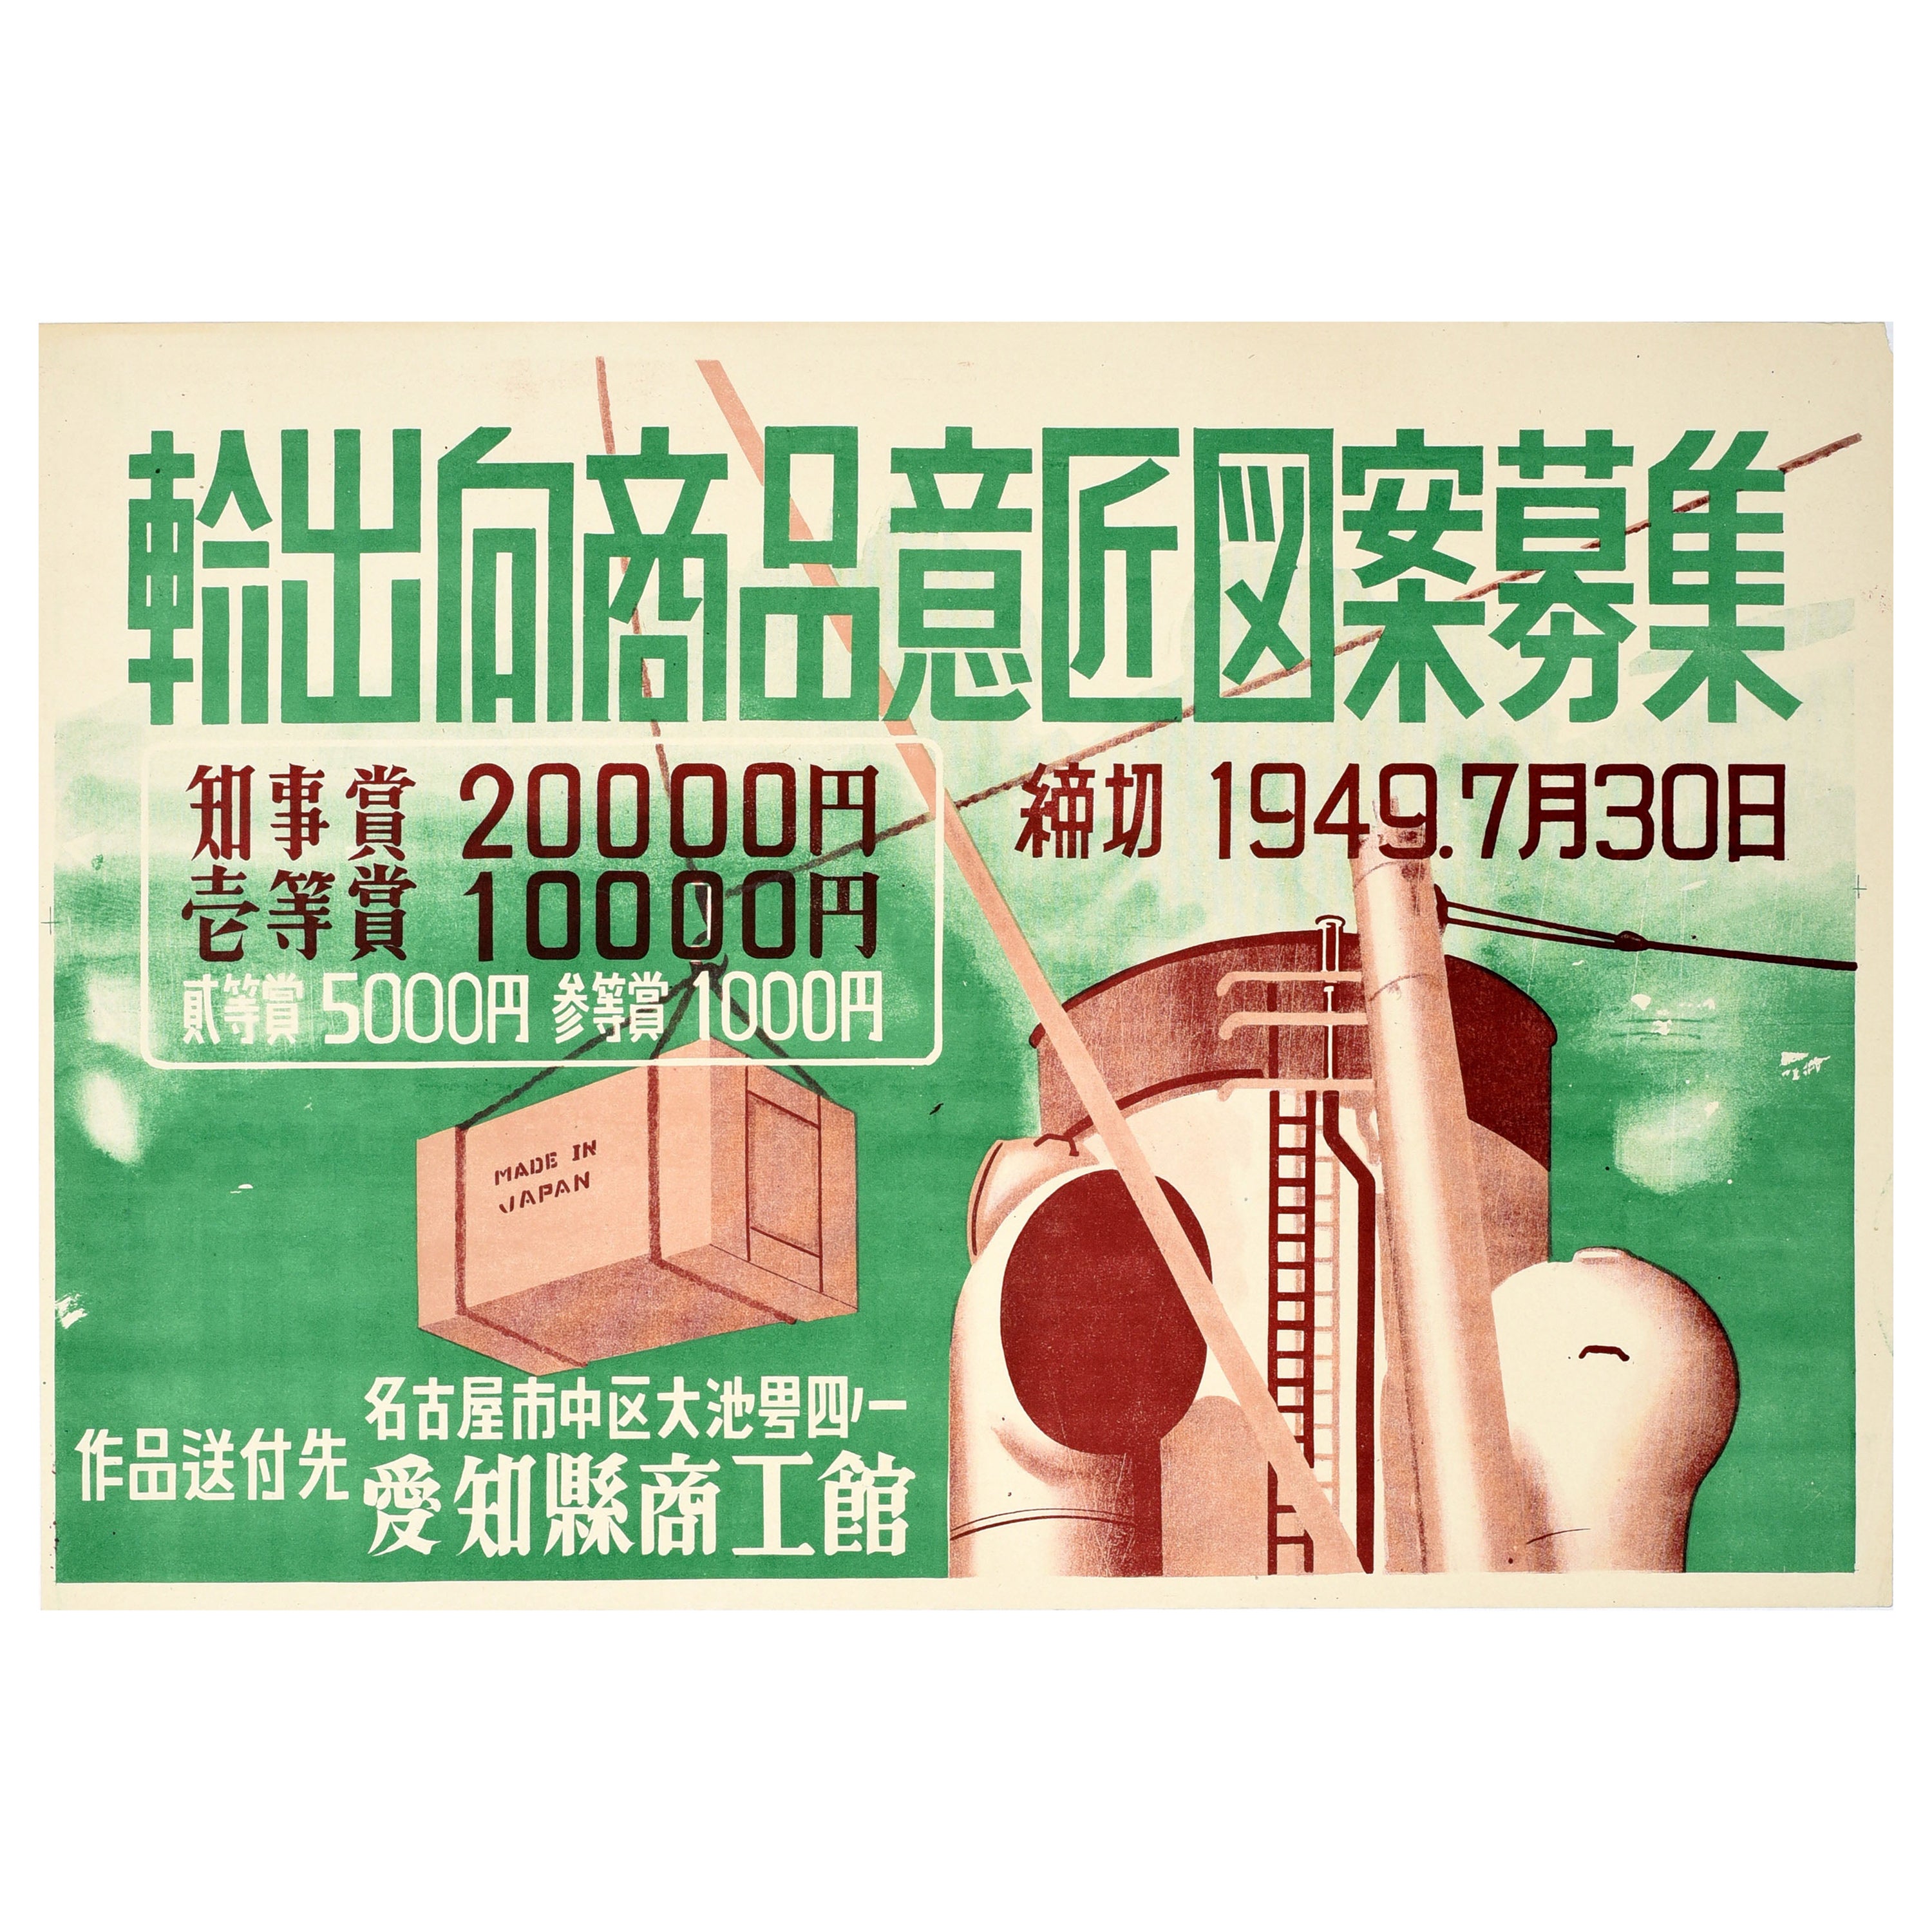 Affiche rétro originale de recrutement, conception de produits pour l'industrie étranger du Japon